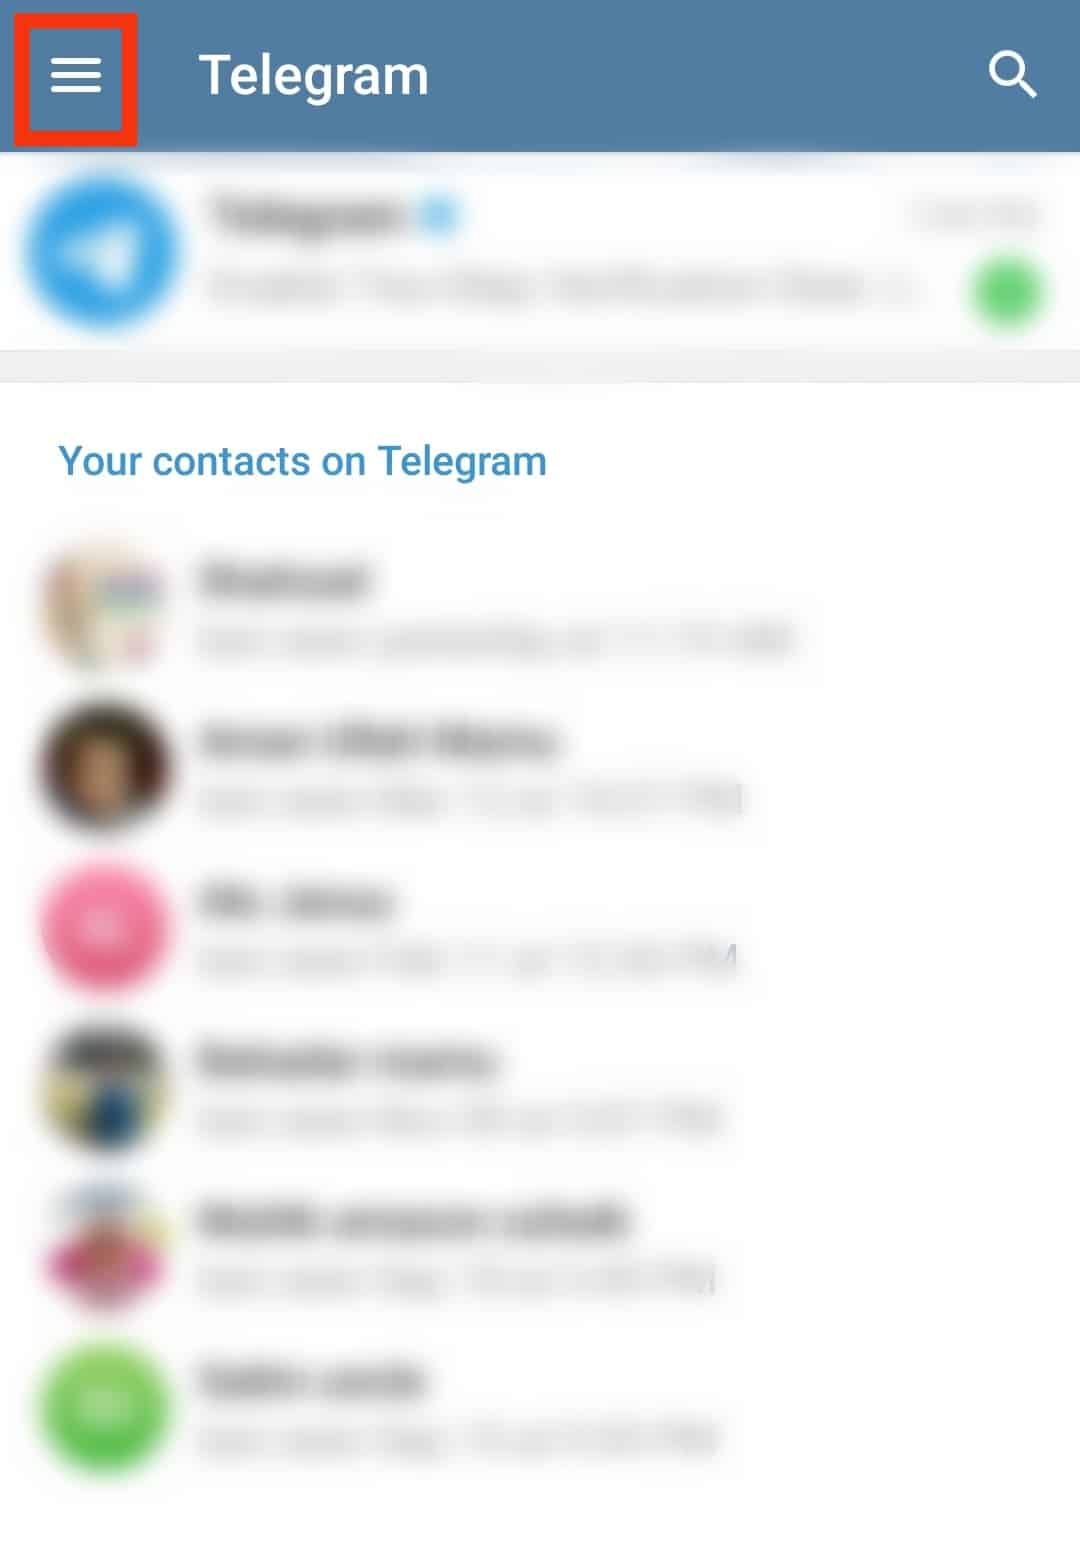 Cómo ver contactos bloqueados en Telegram?